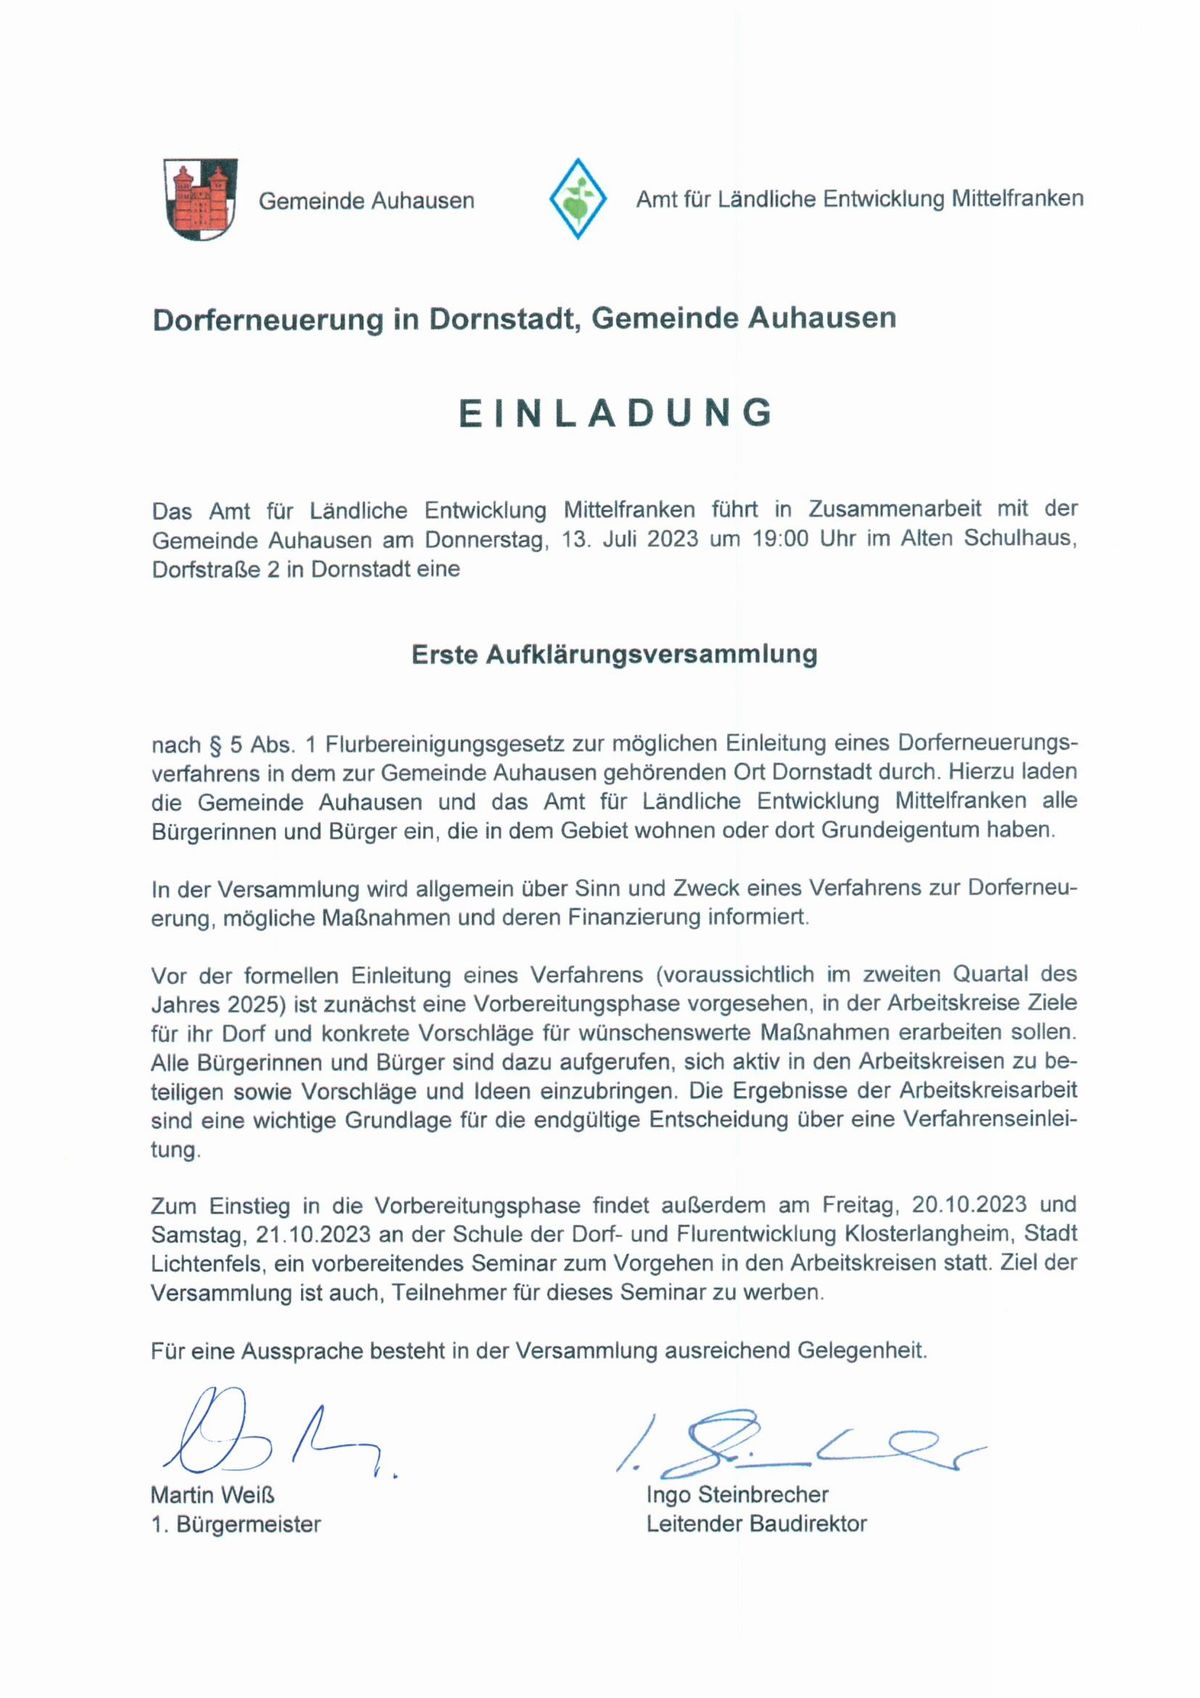 Gemeinde Auhausen - Einladung Aufklärungsversammlung